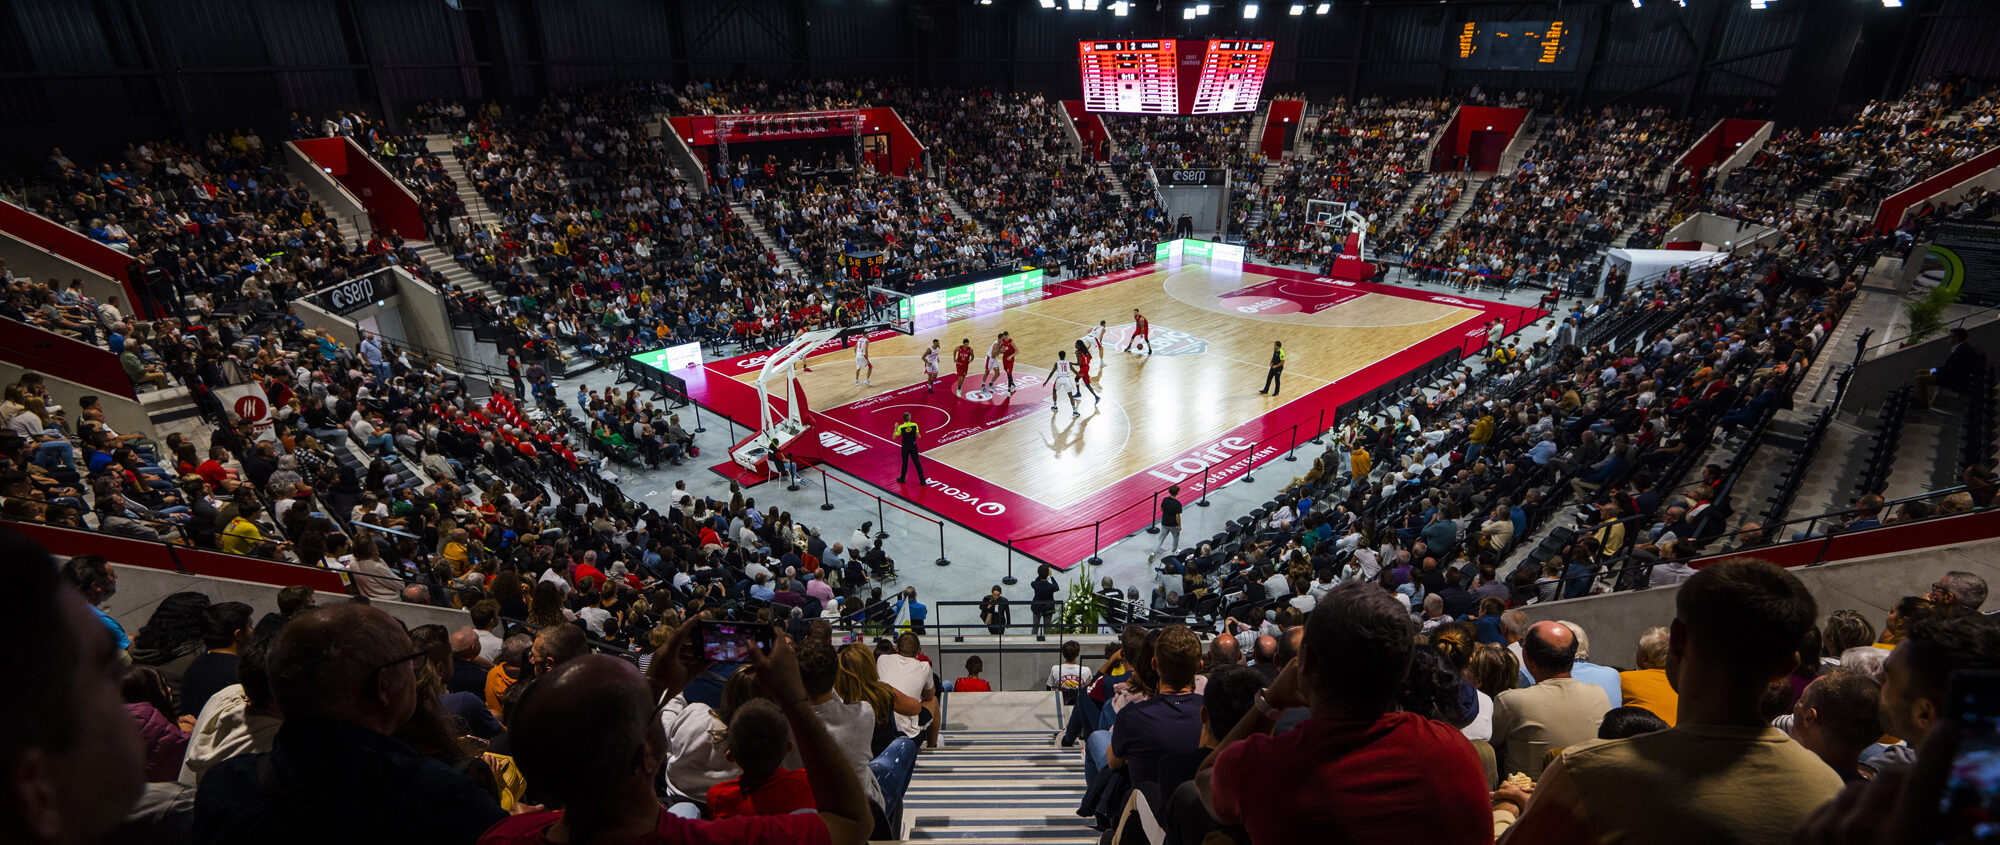 Inauguration de l'Arena Saint-Étienne Métropole